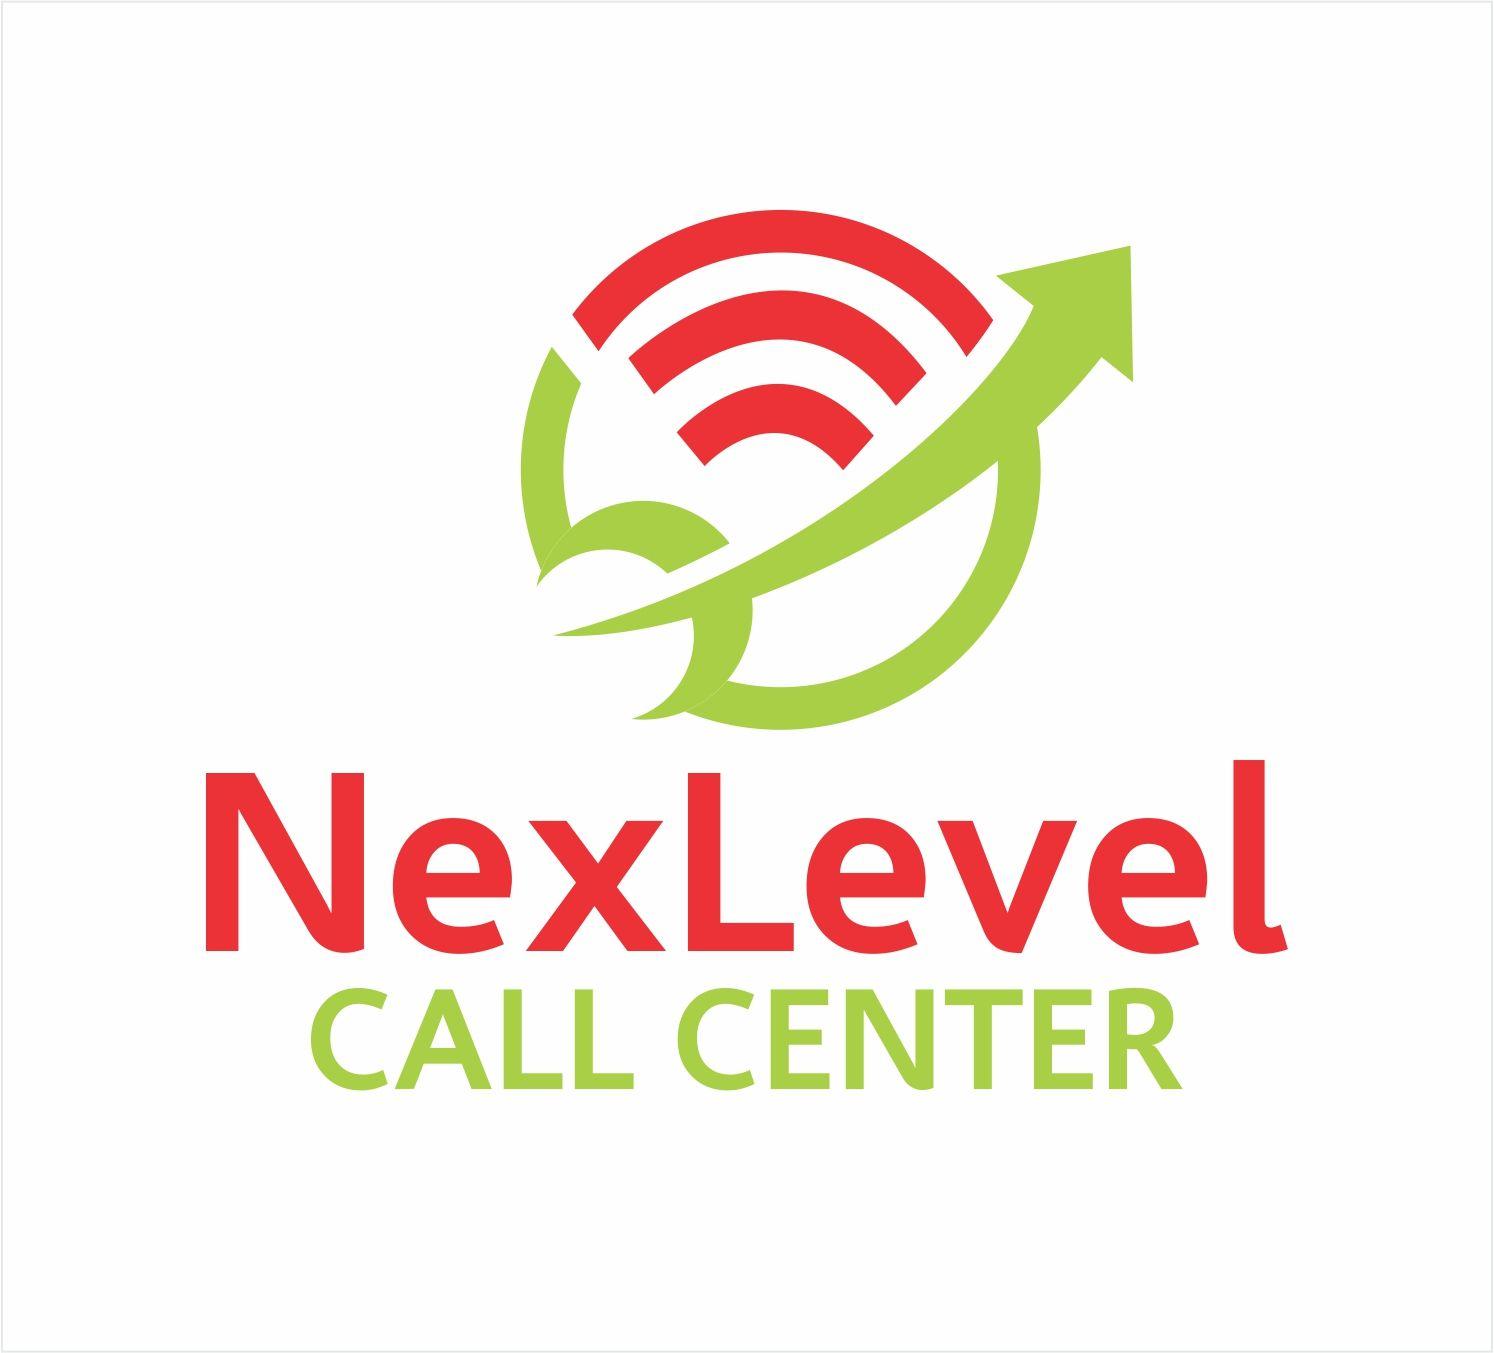 Call Center Logo - Elegant, Playful, Business Service Logo Design for NexLevel Call